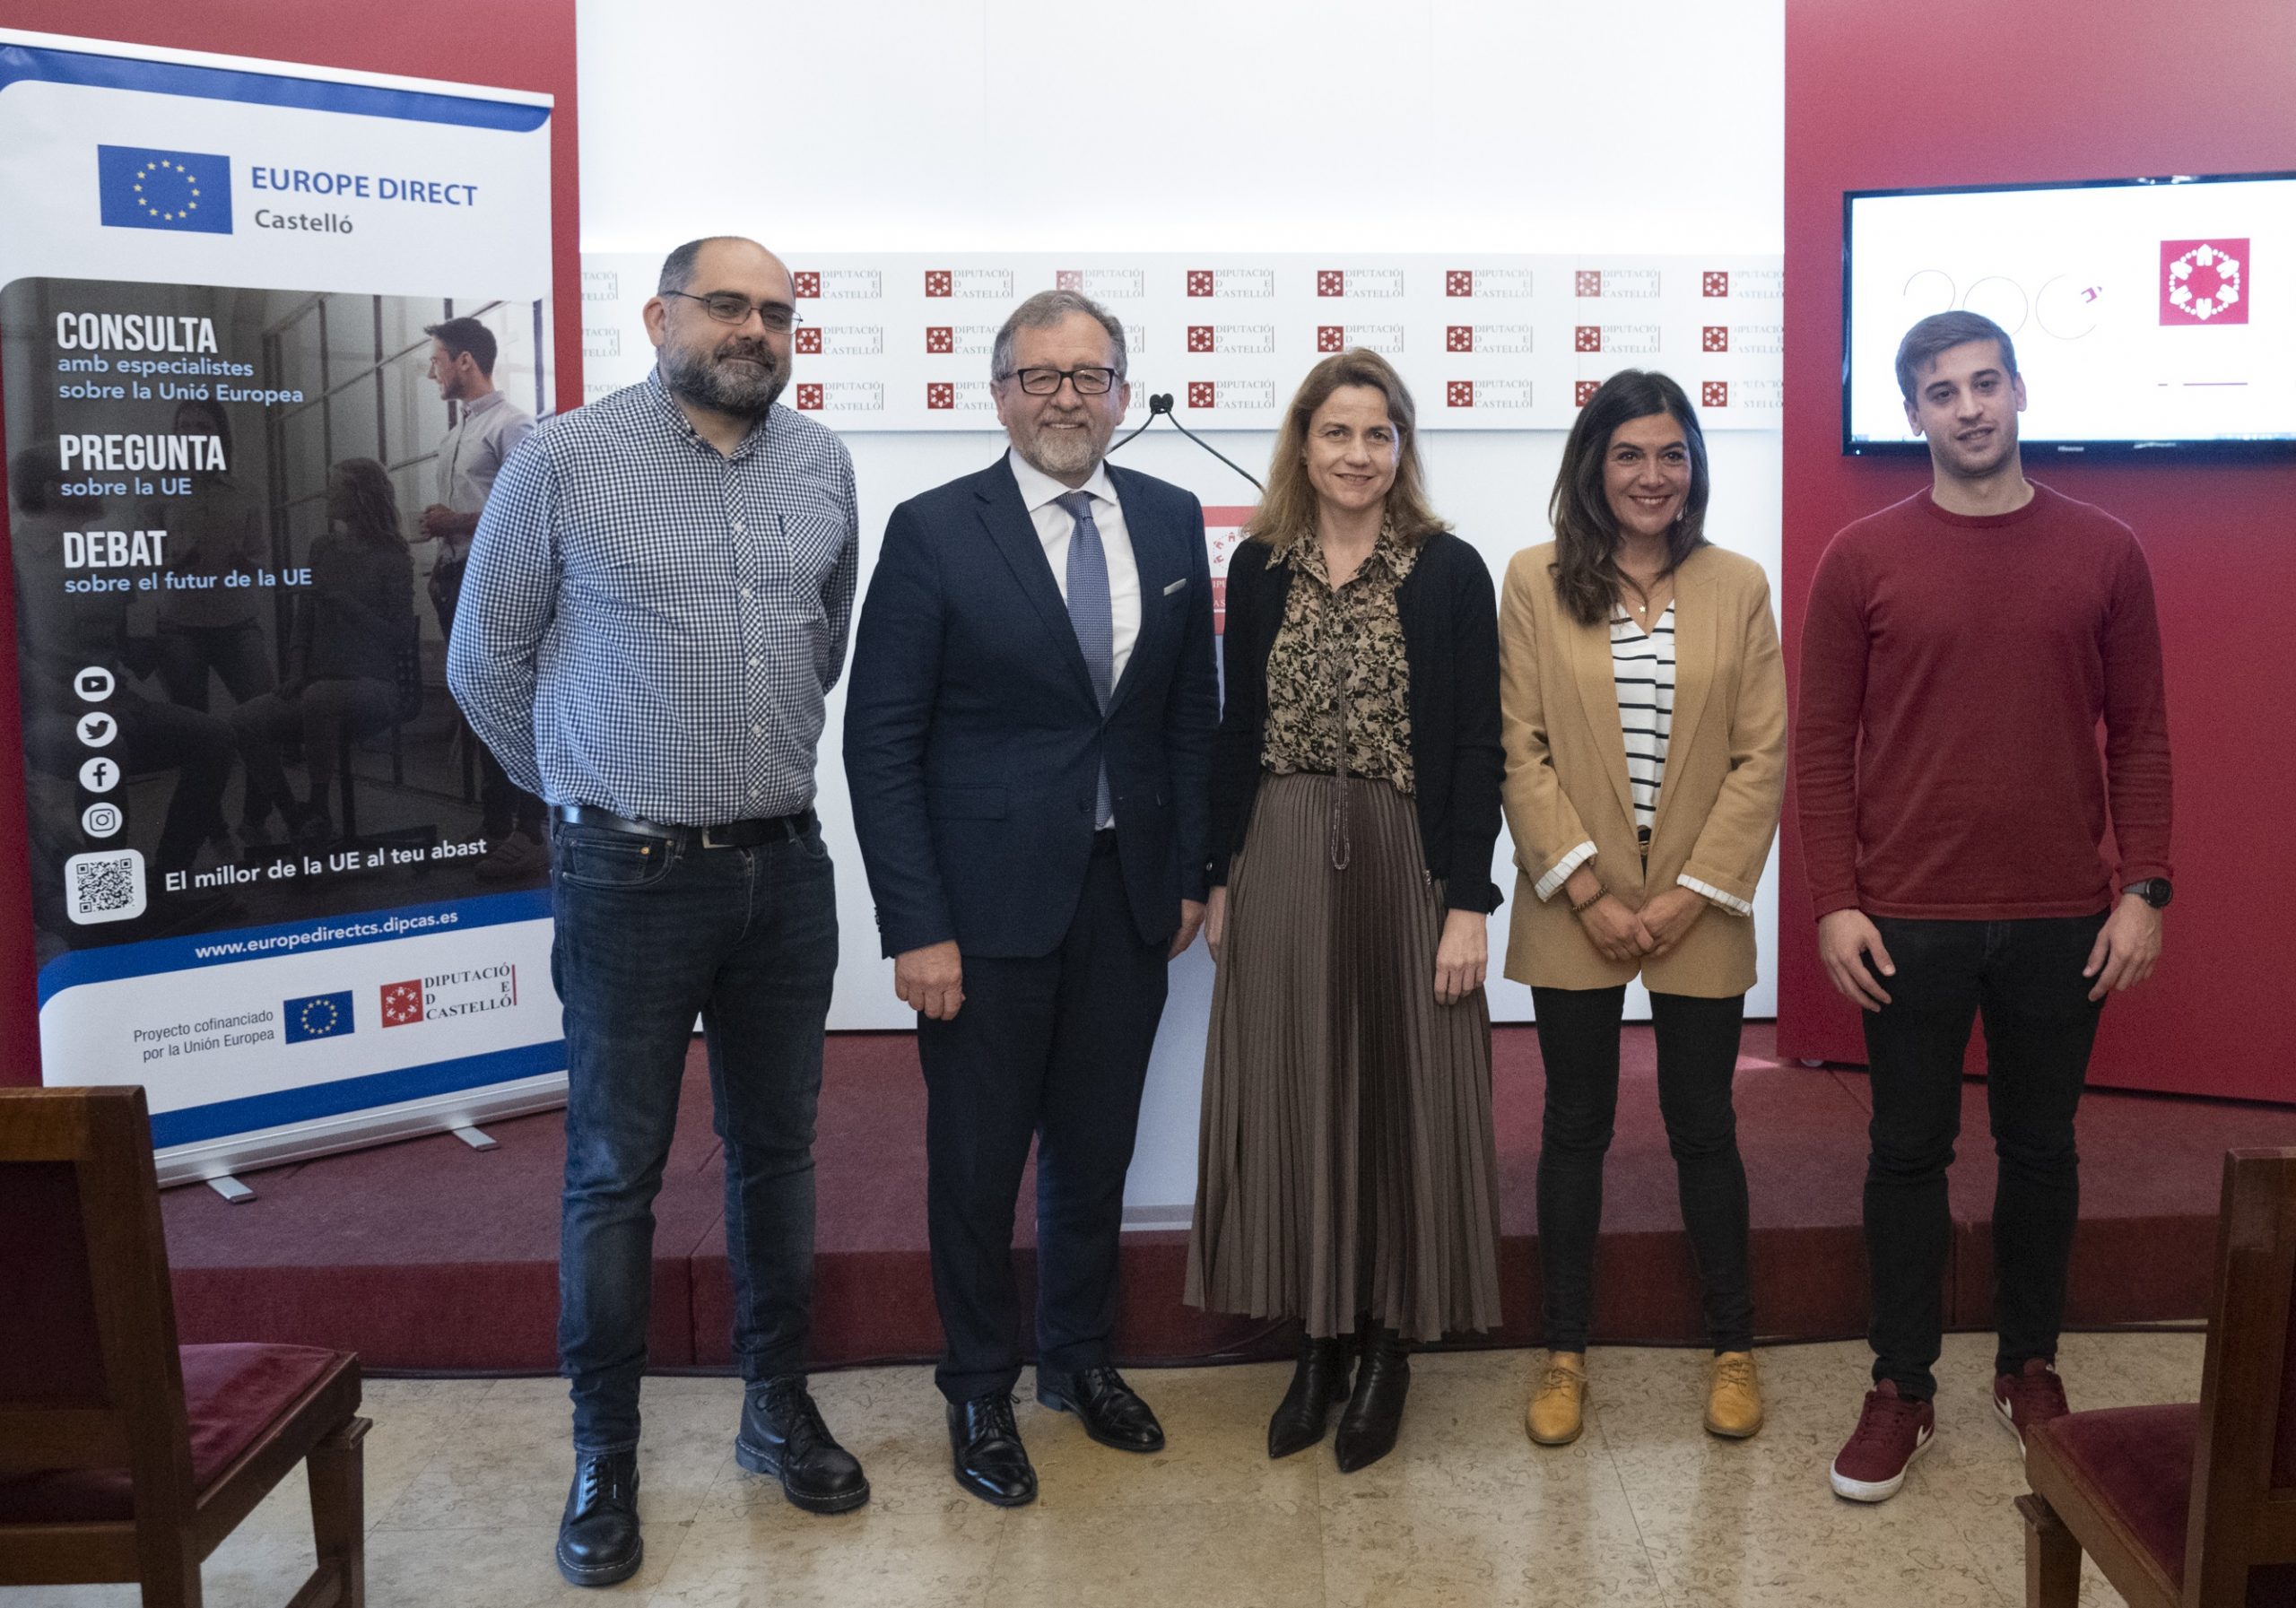 La Diputación de Castellón conmemora el Día de Europa con una conferencia sobre el fenómeno de las ‘fake news’ y cómo combatirlas